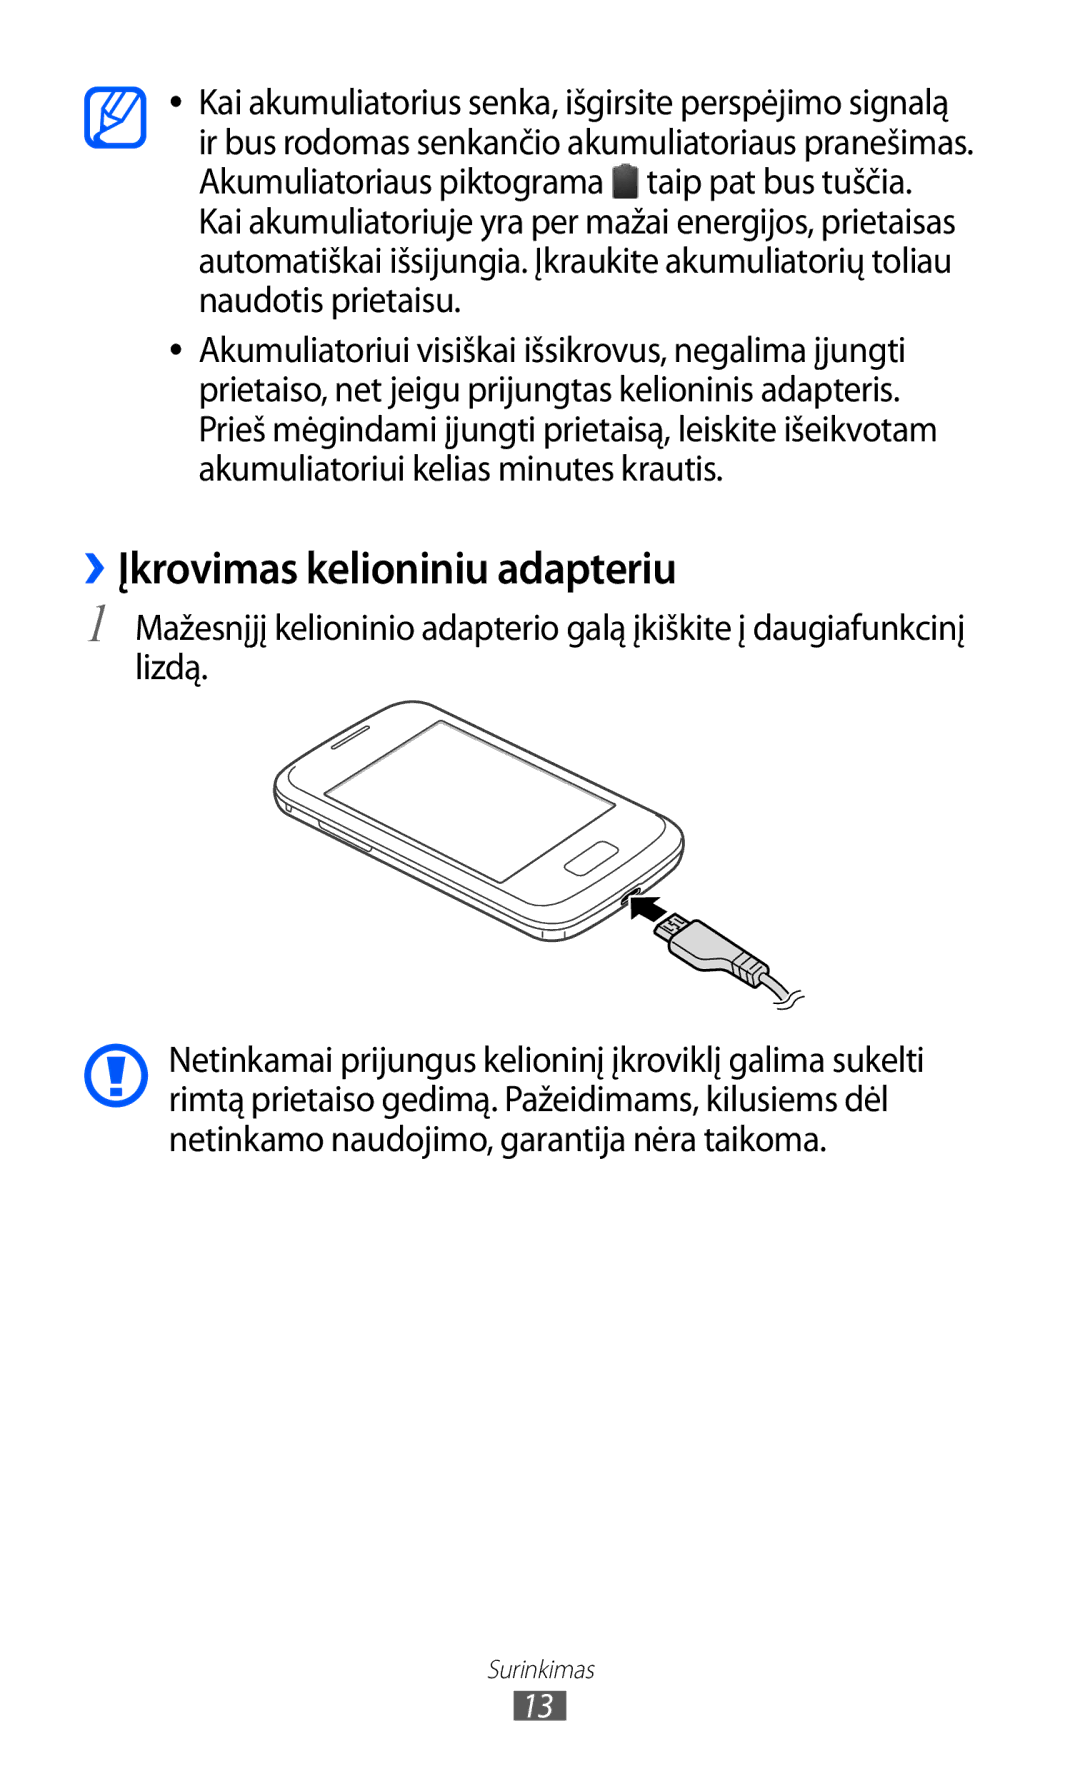 Samsung GT-S6102SKASEB manual ››Įkrovimas kelioniniu adapteriu 